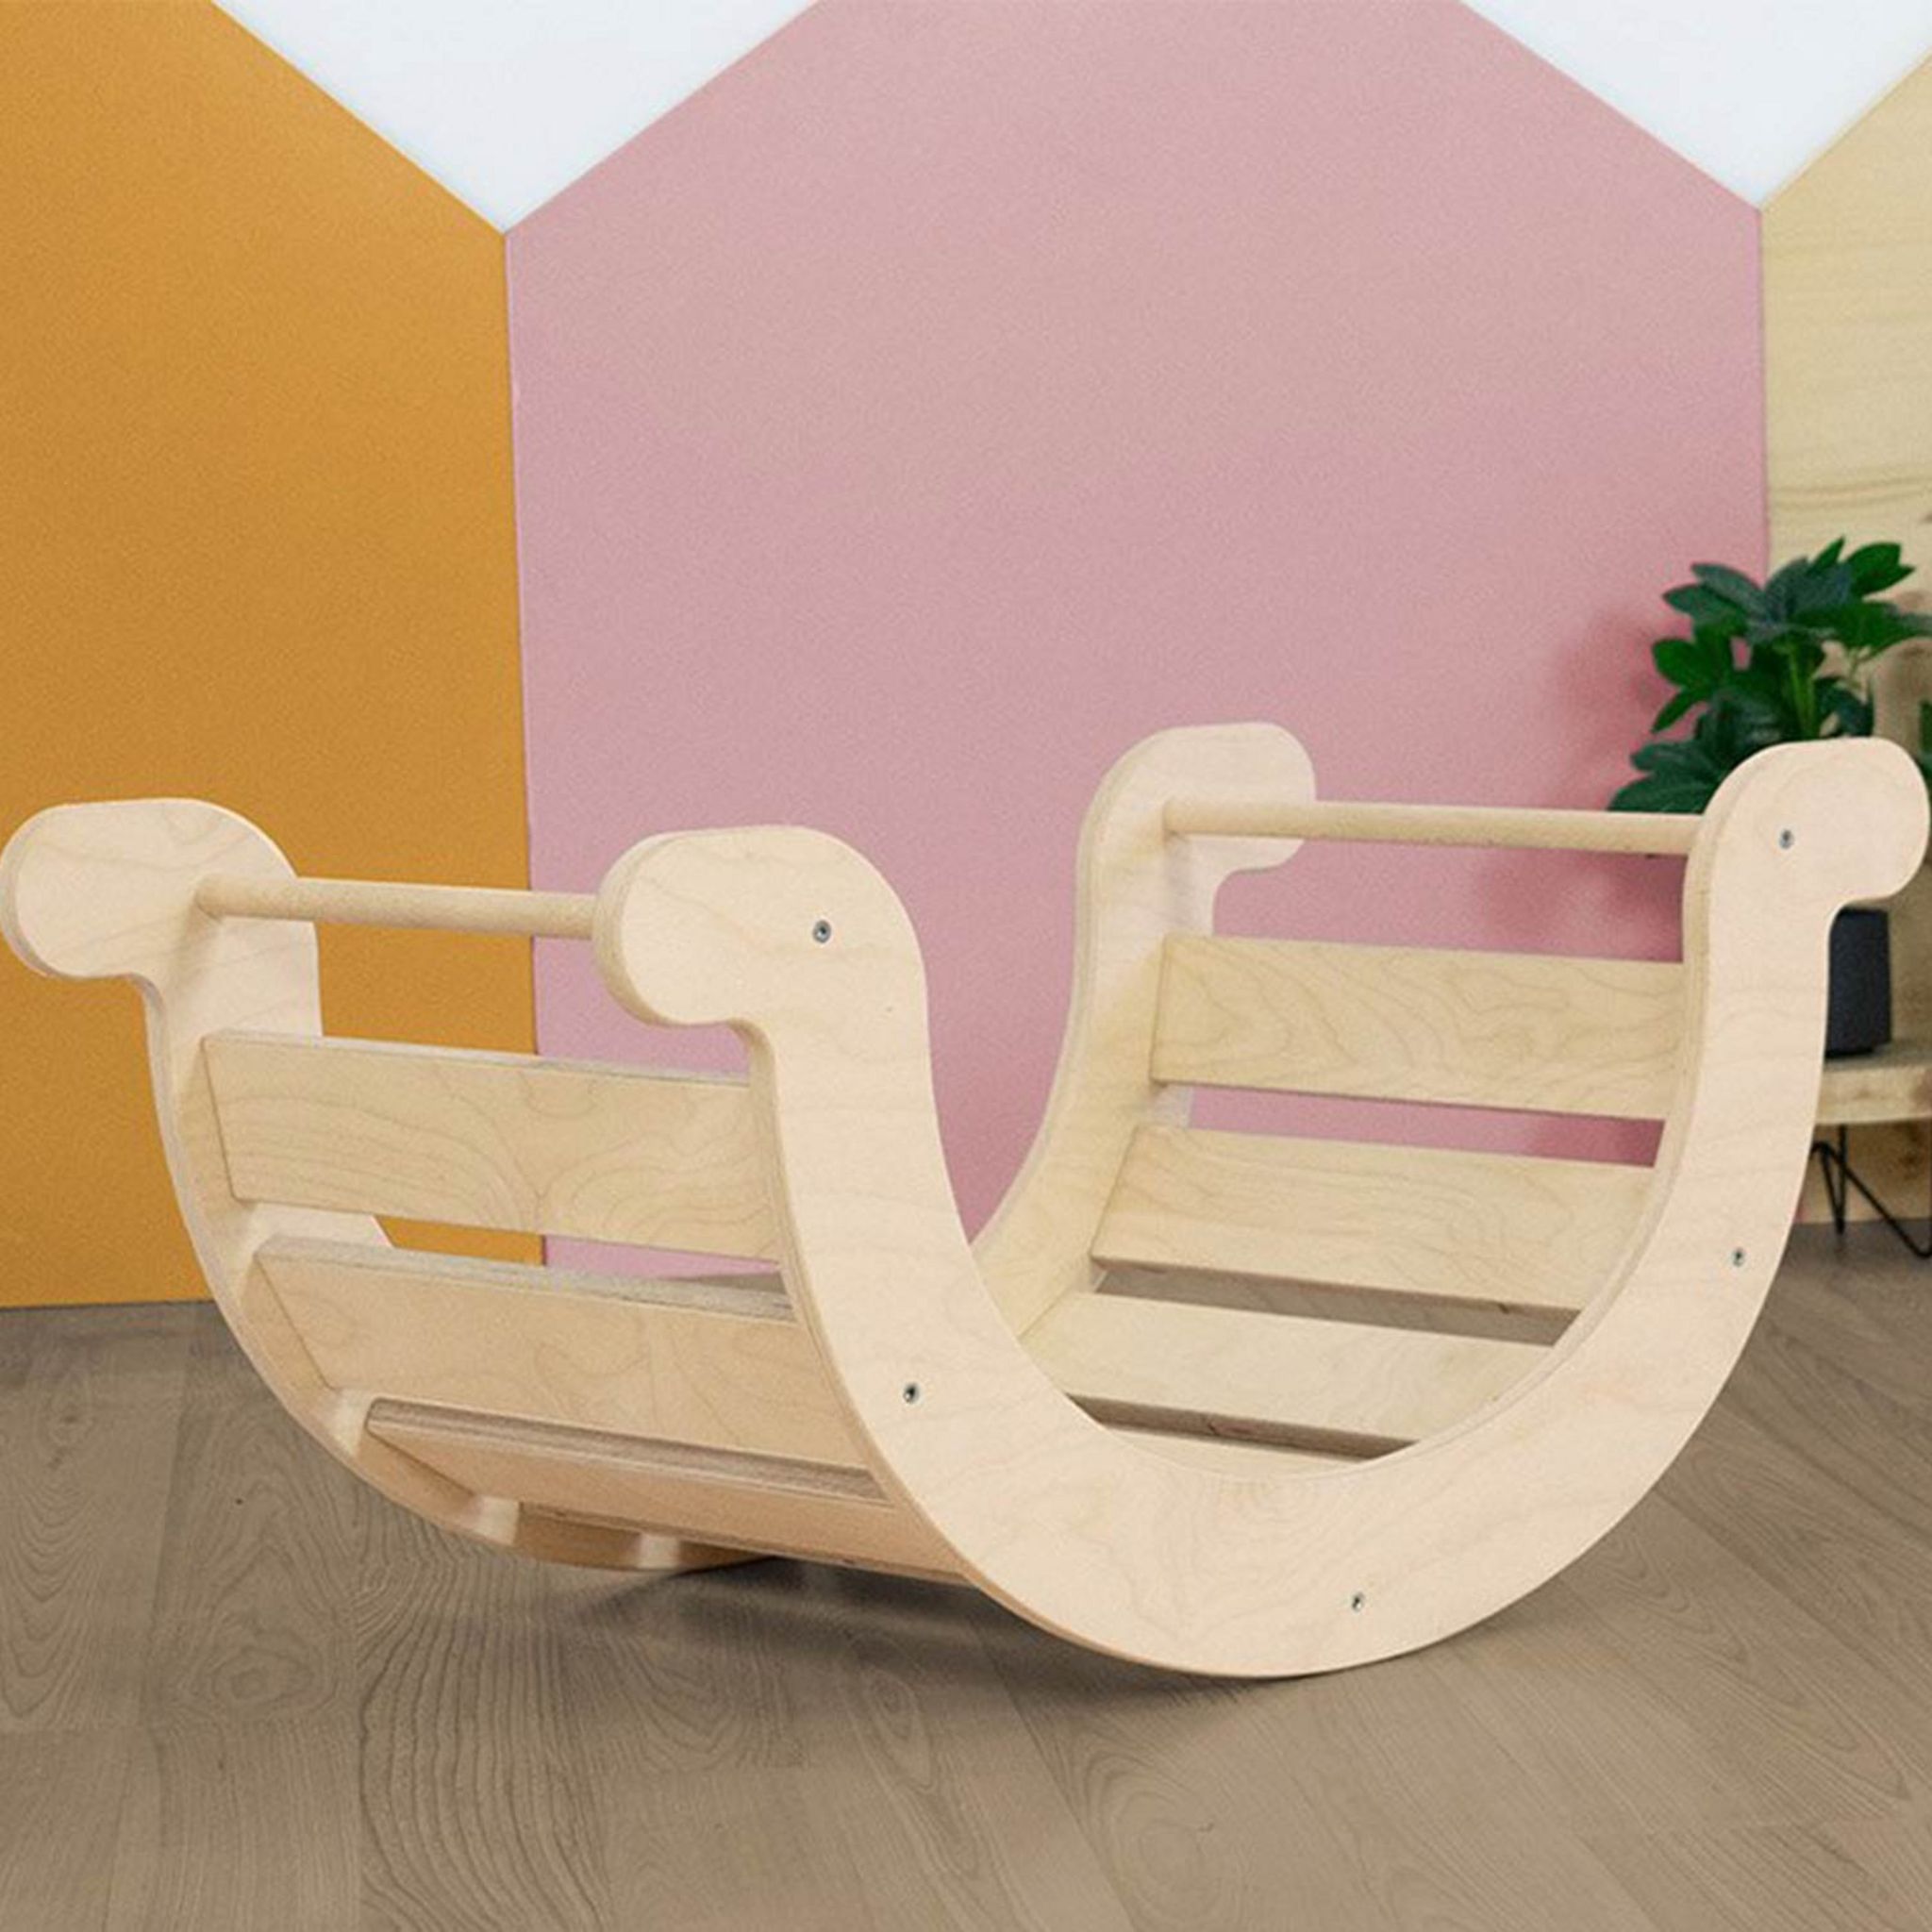 Planche d'équilibre Montessori YUPEE - bois massif - couleurs pastel